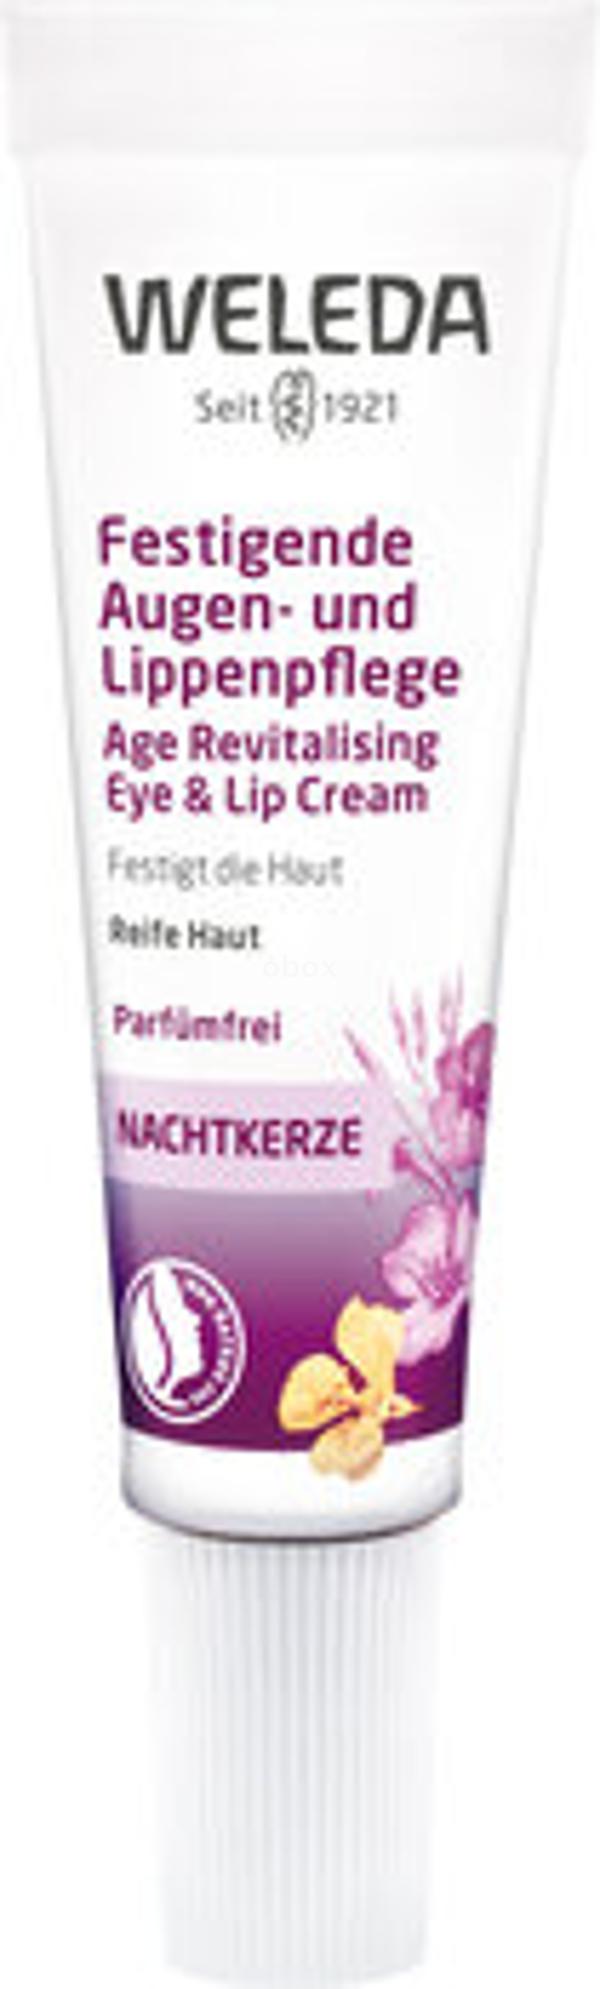 Produktfoto zu Nachtkerze Augen- und Lippenpflege, 10 ml